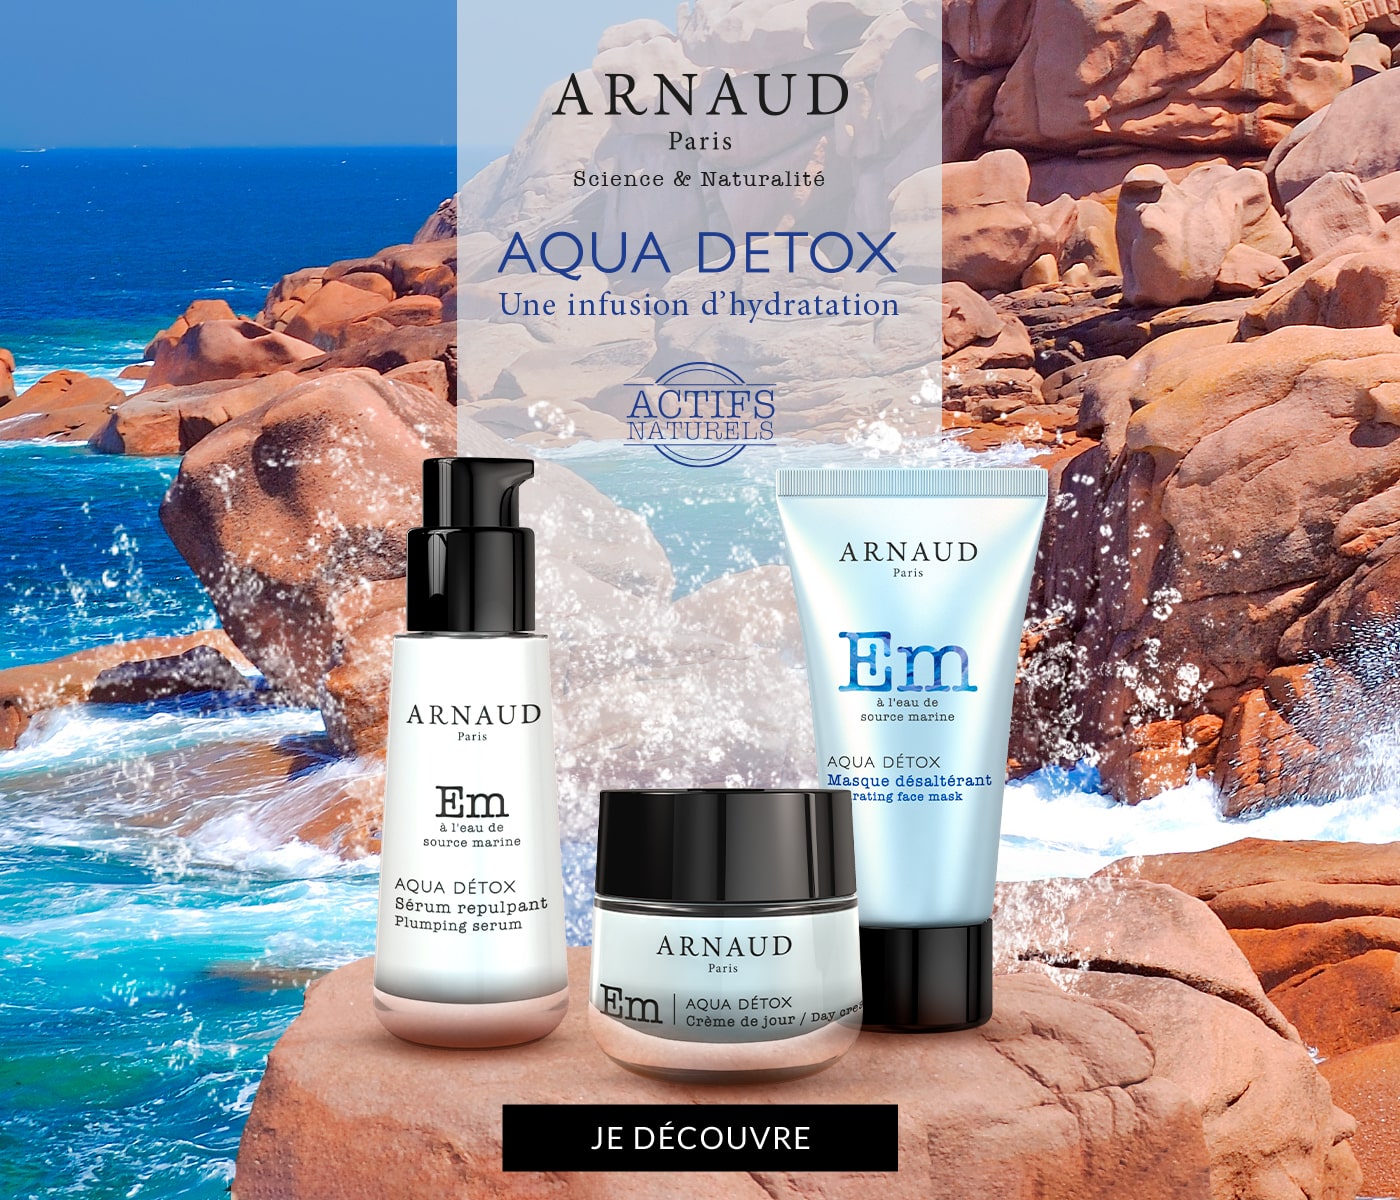 Aqua Detox - Arnaud Paris